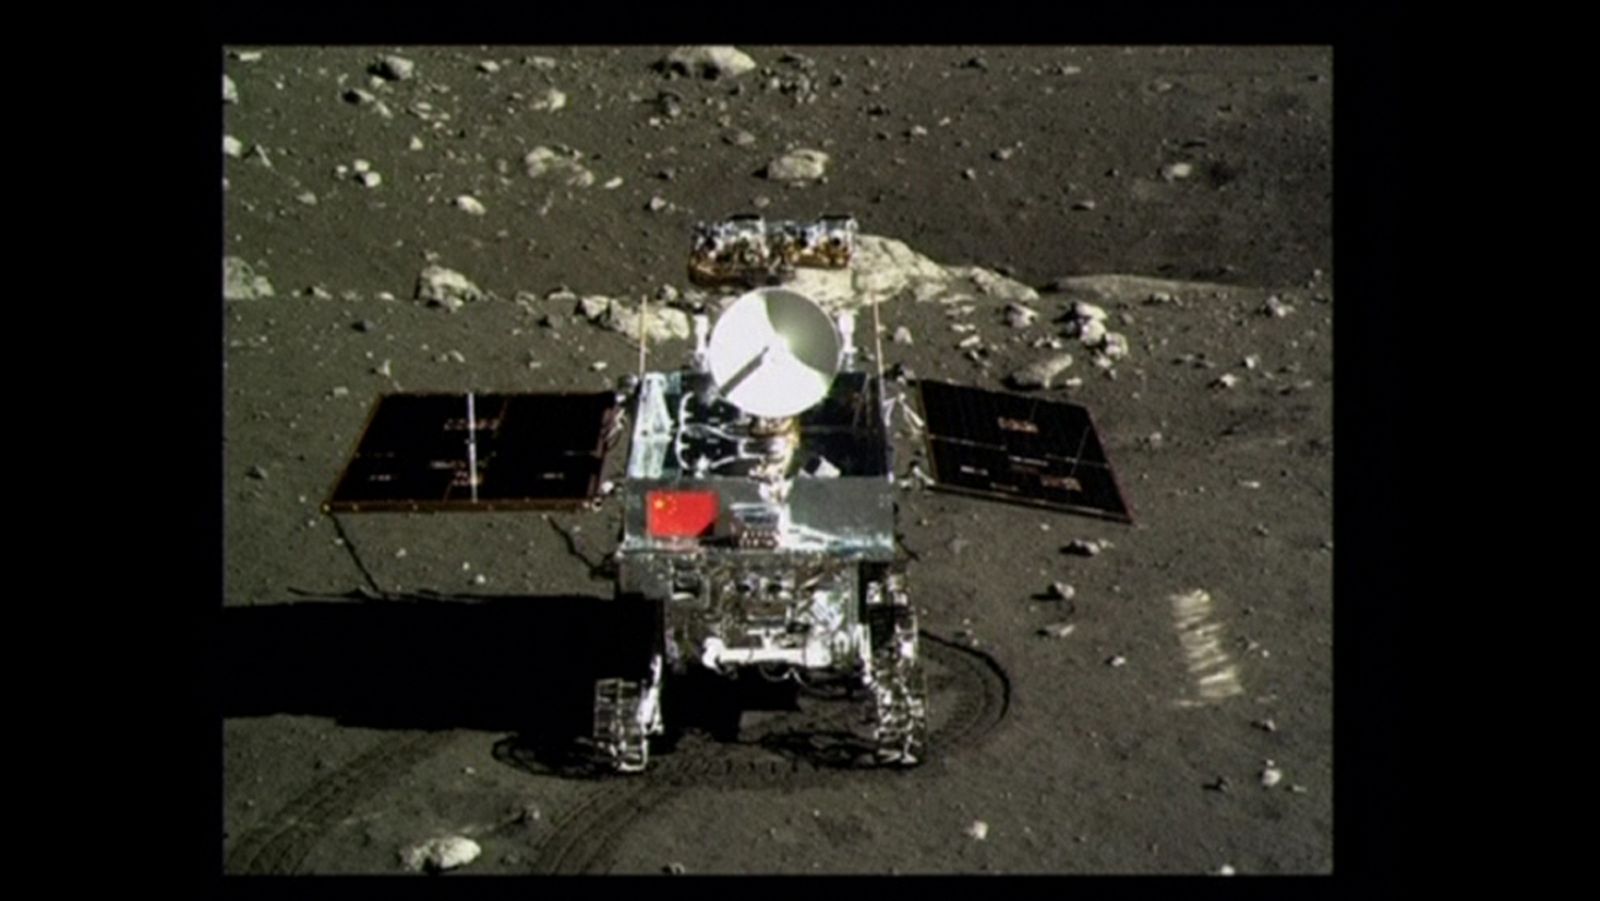 Imagen del primer robot explorador chino "Yutu" en la superficie lunar, portando la bandera nacional.